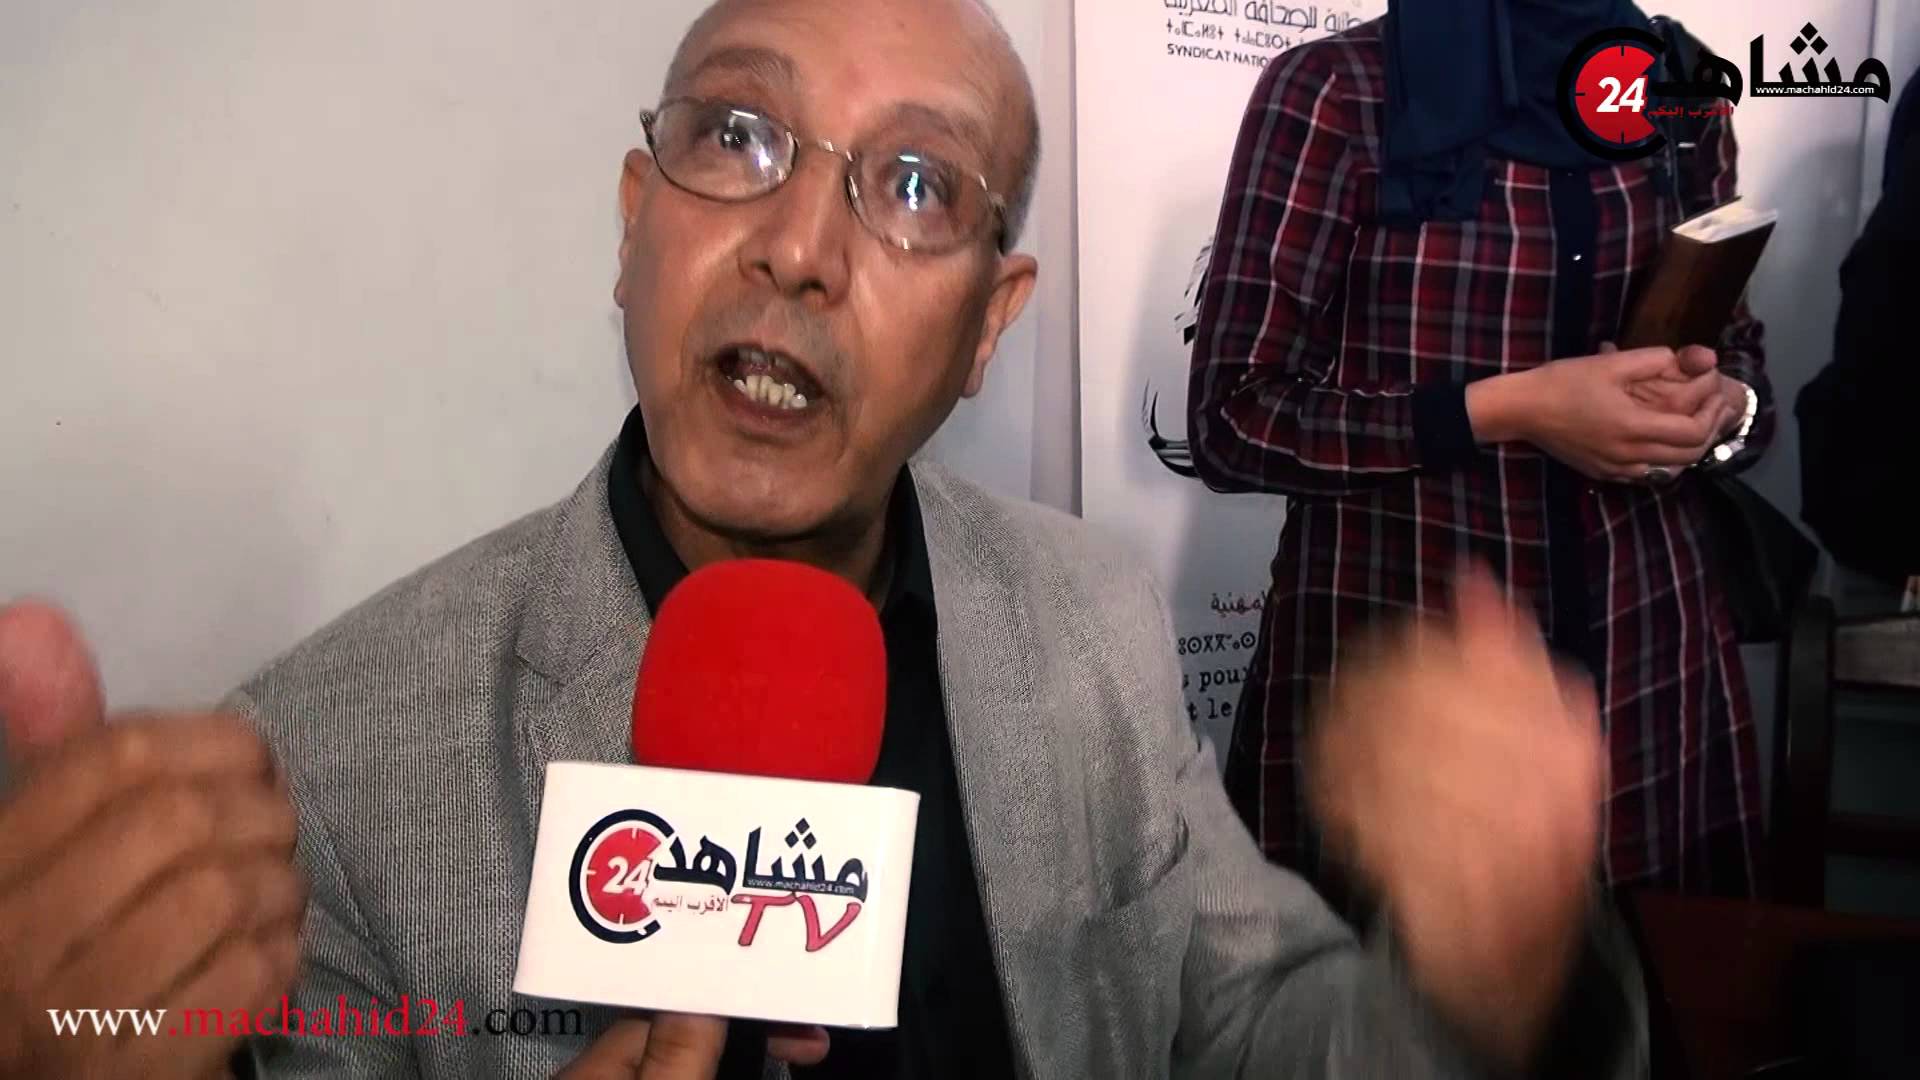 د.بوعزيز ينتقد الطريقة التي تم بها الإحتجاج أمام سفارة السويد